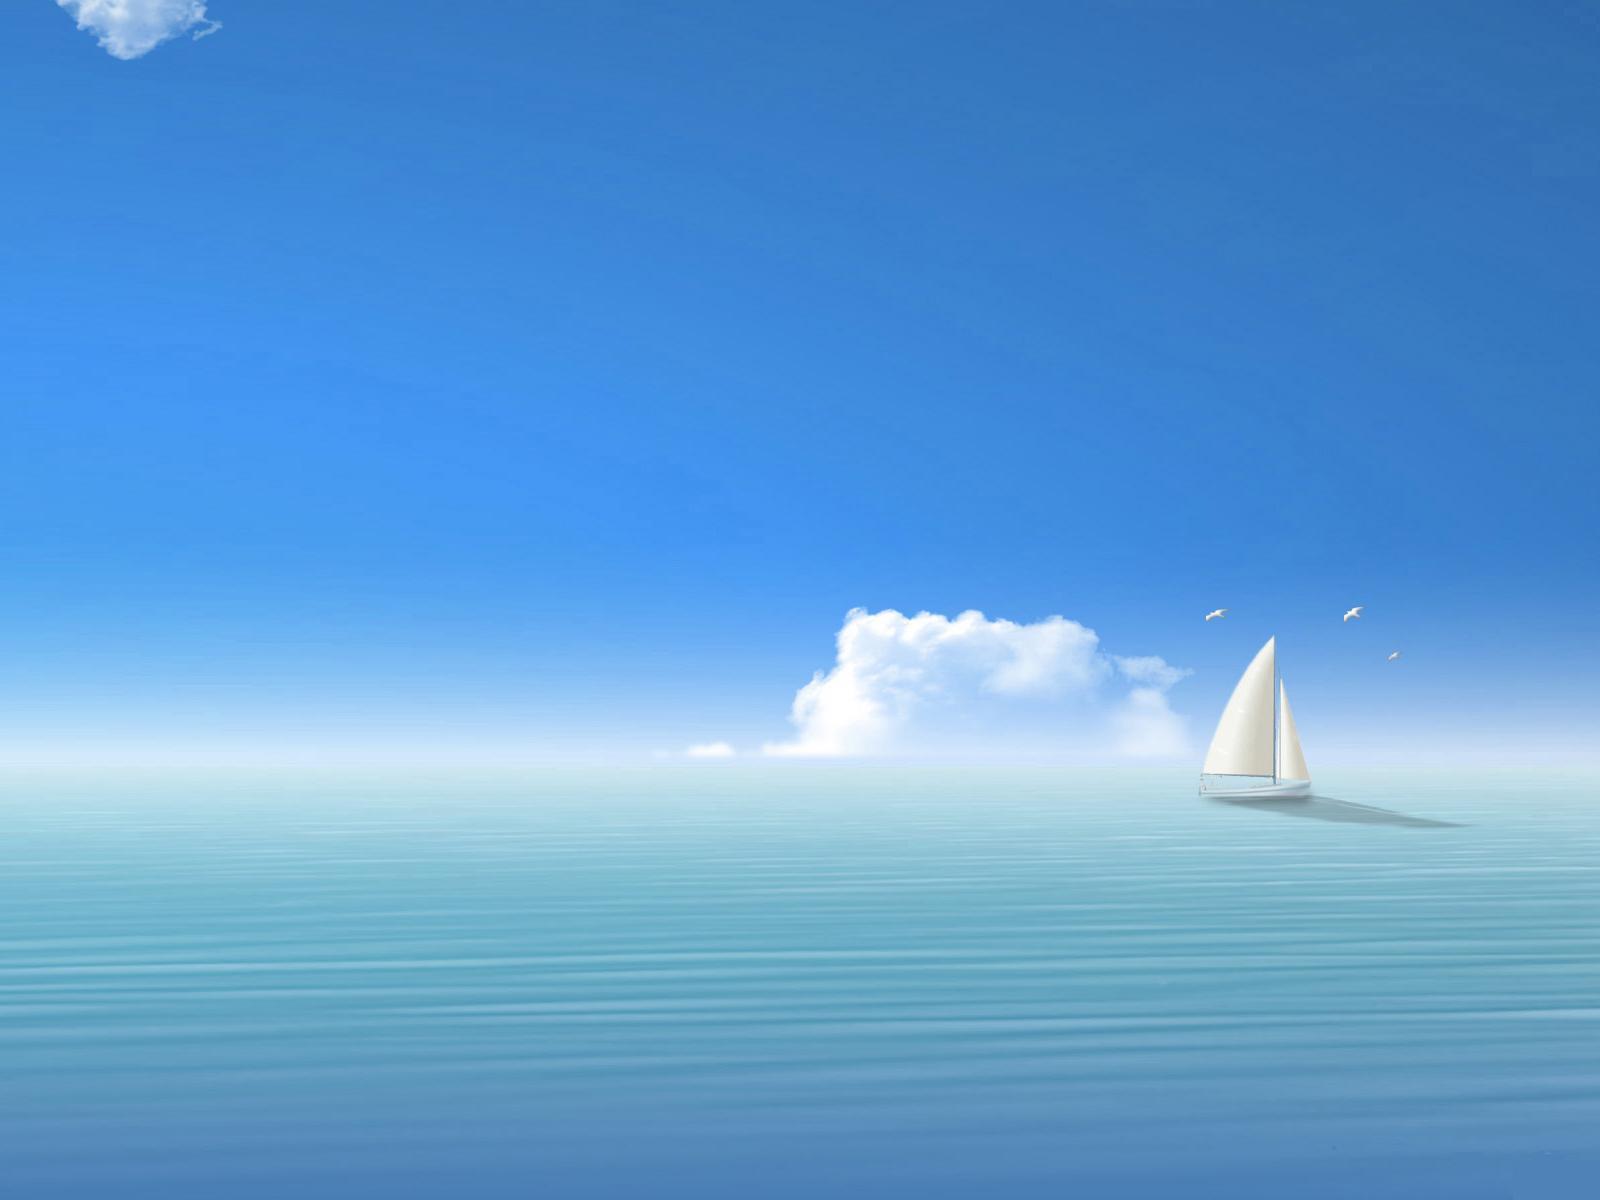 Скачать обои бесплатно Облака, Пейзаж, Море, Рисунки, Корабли картинка на рабочий стол ПК